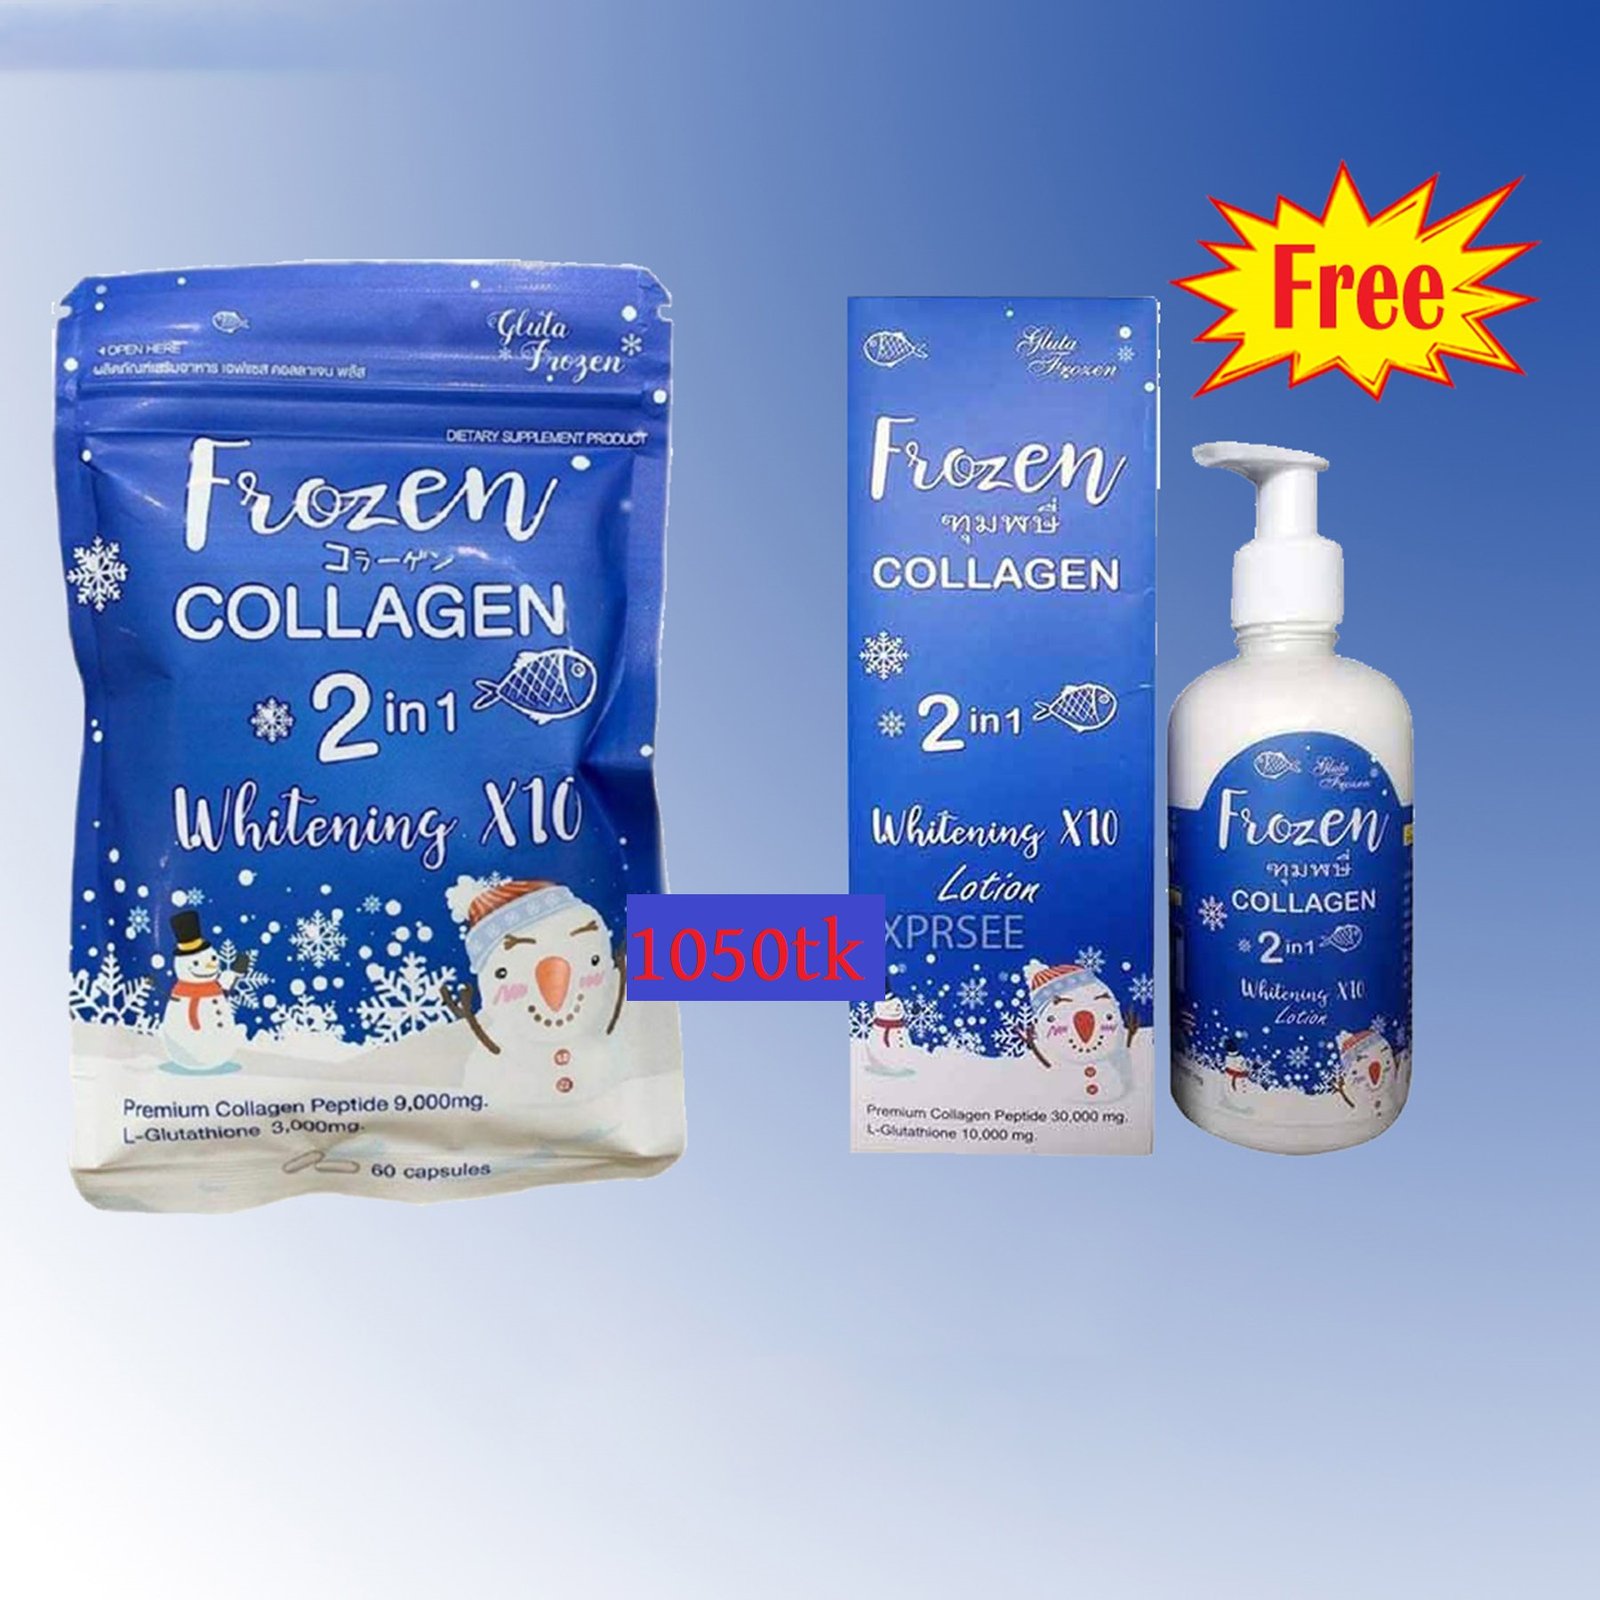 Original FROZEN Collagen 2 in 1 Whitening and Acn Solution - Thailand 2